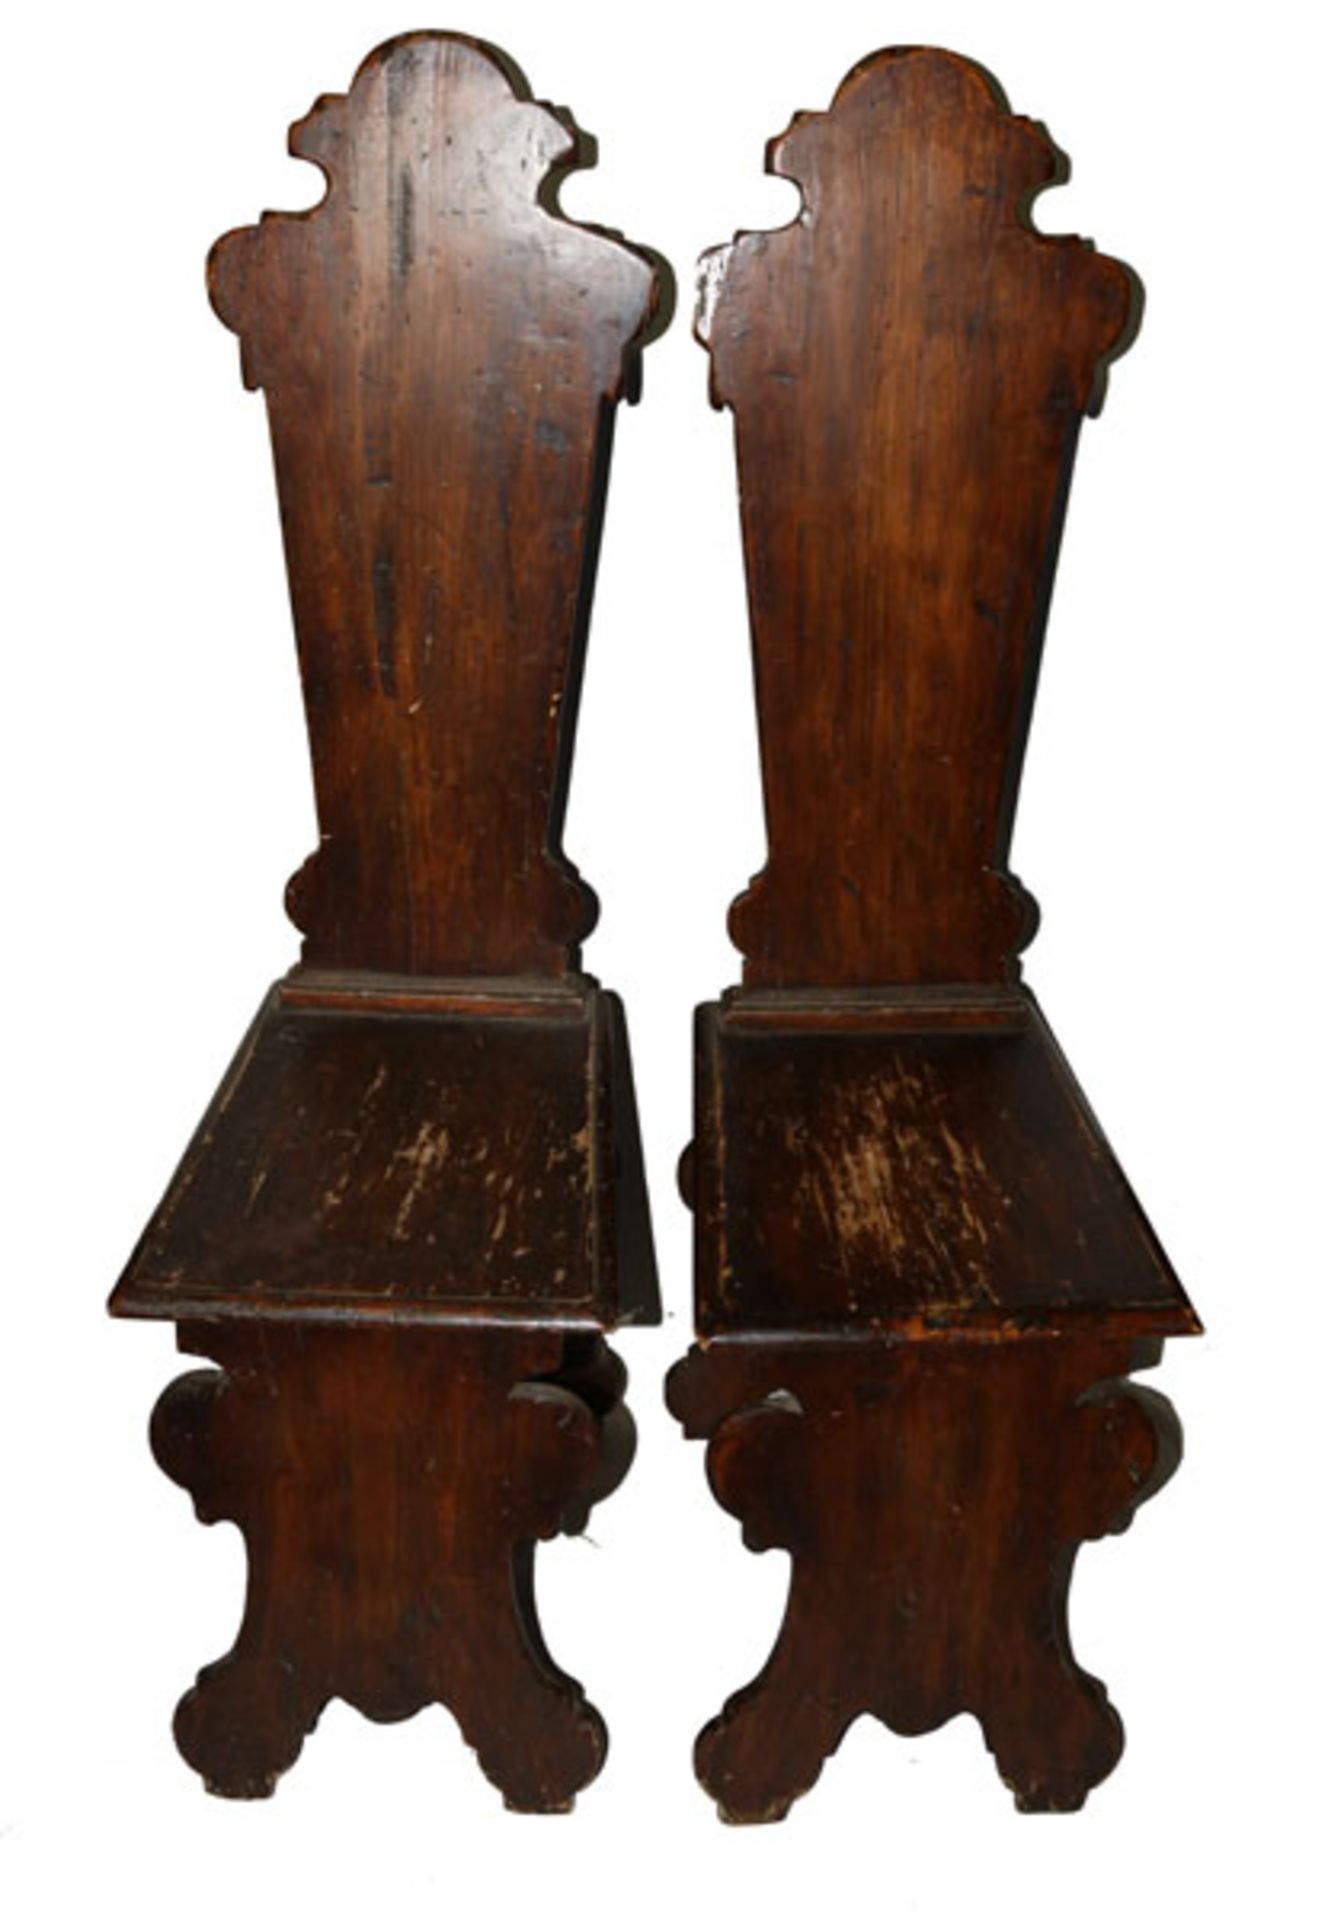 Paar Brettstühle in gerader Form, gebeizt, starke Gebrauchsspuren, beschädigt, H 117 cm, B 33 cm,